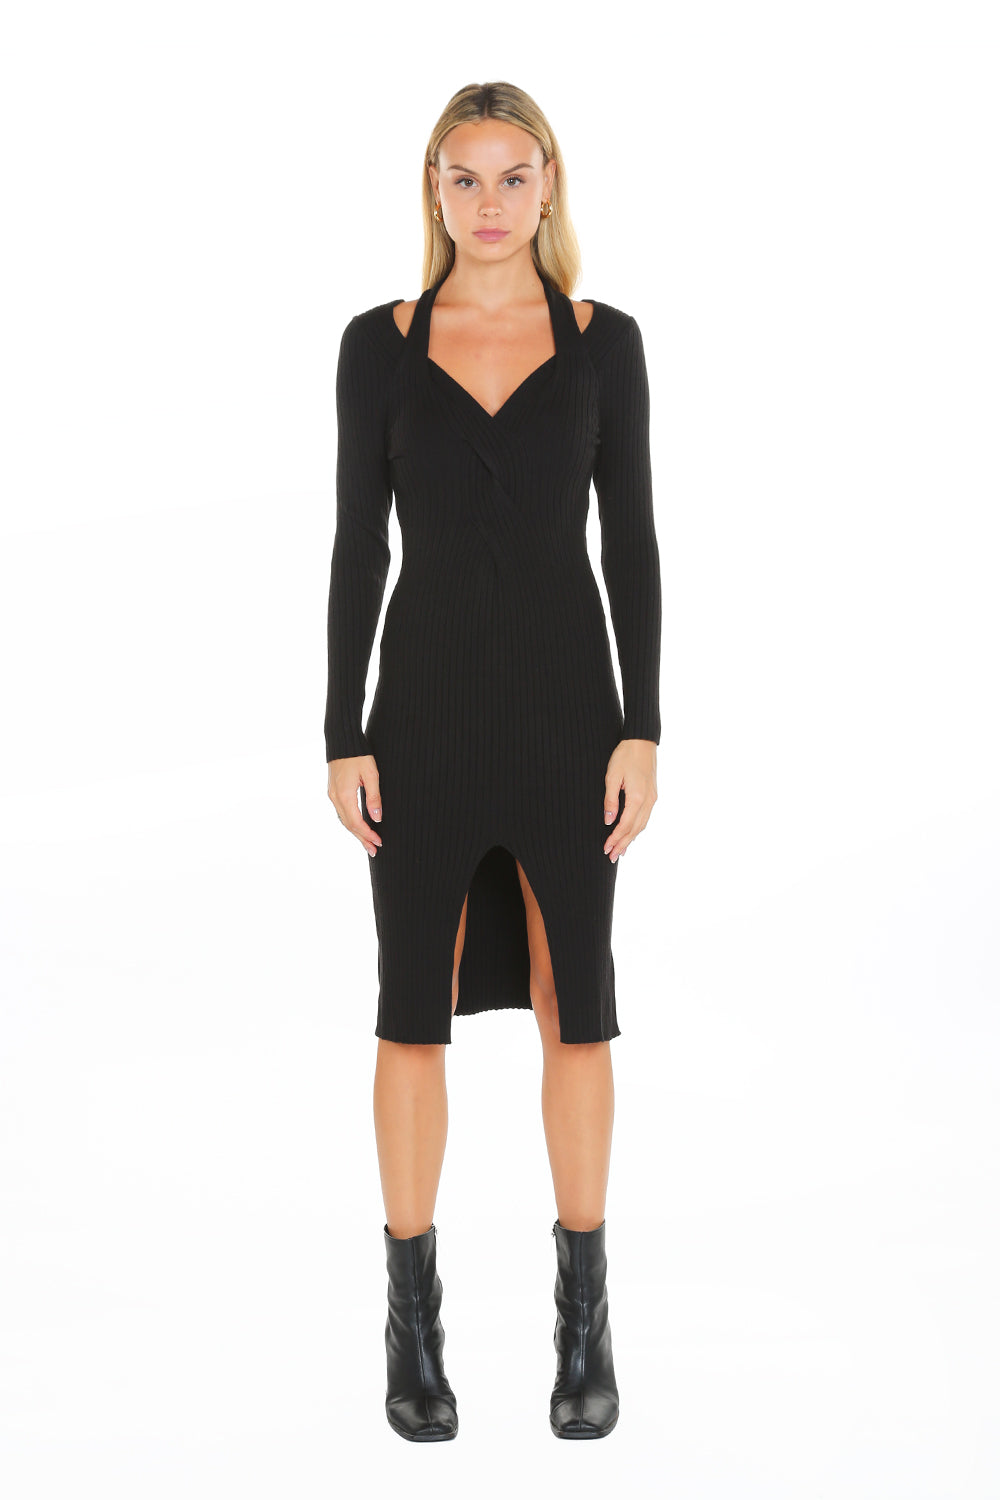 Cashmere blended Halter neck & Semi off shoulder Midi Dress | Shop ...